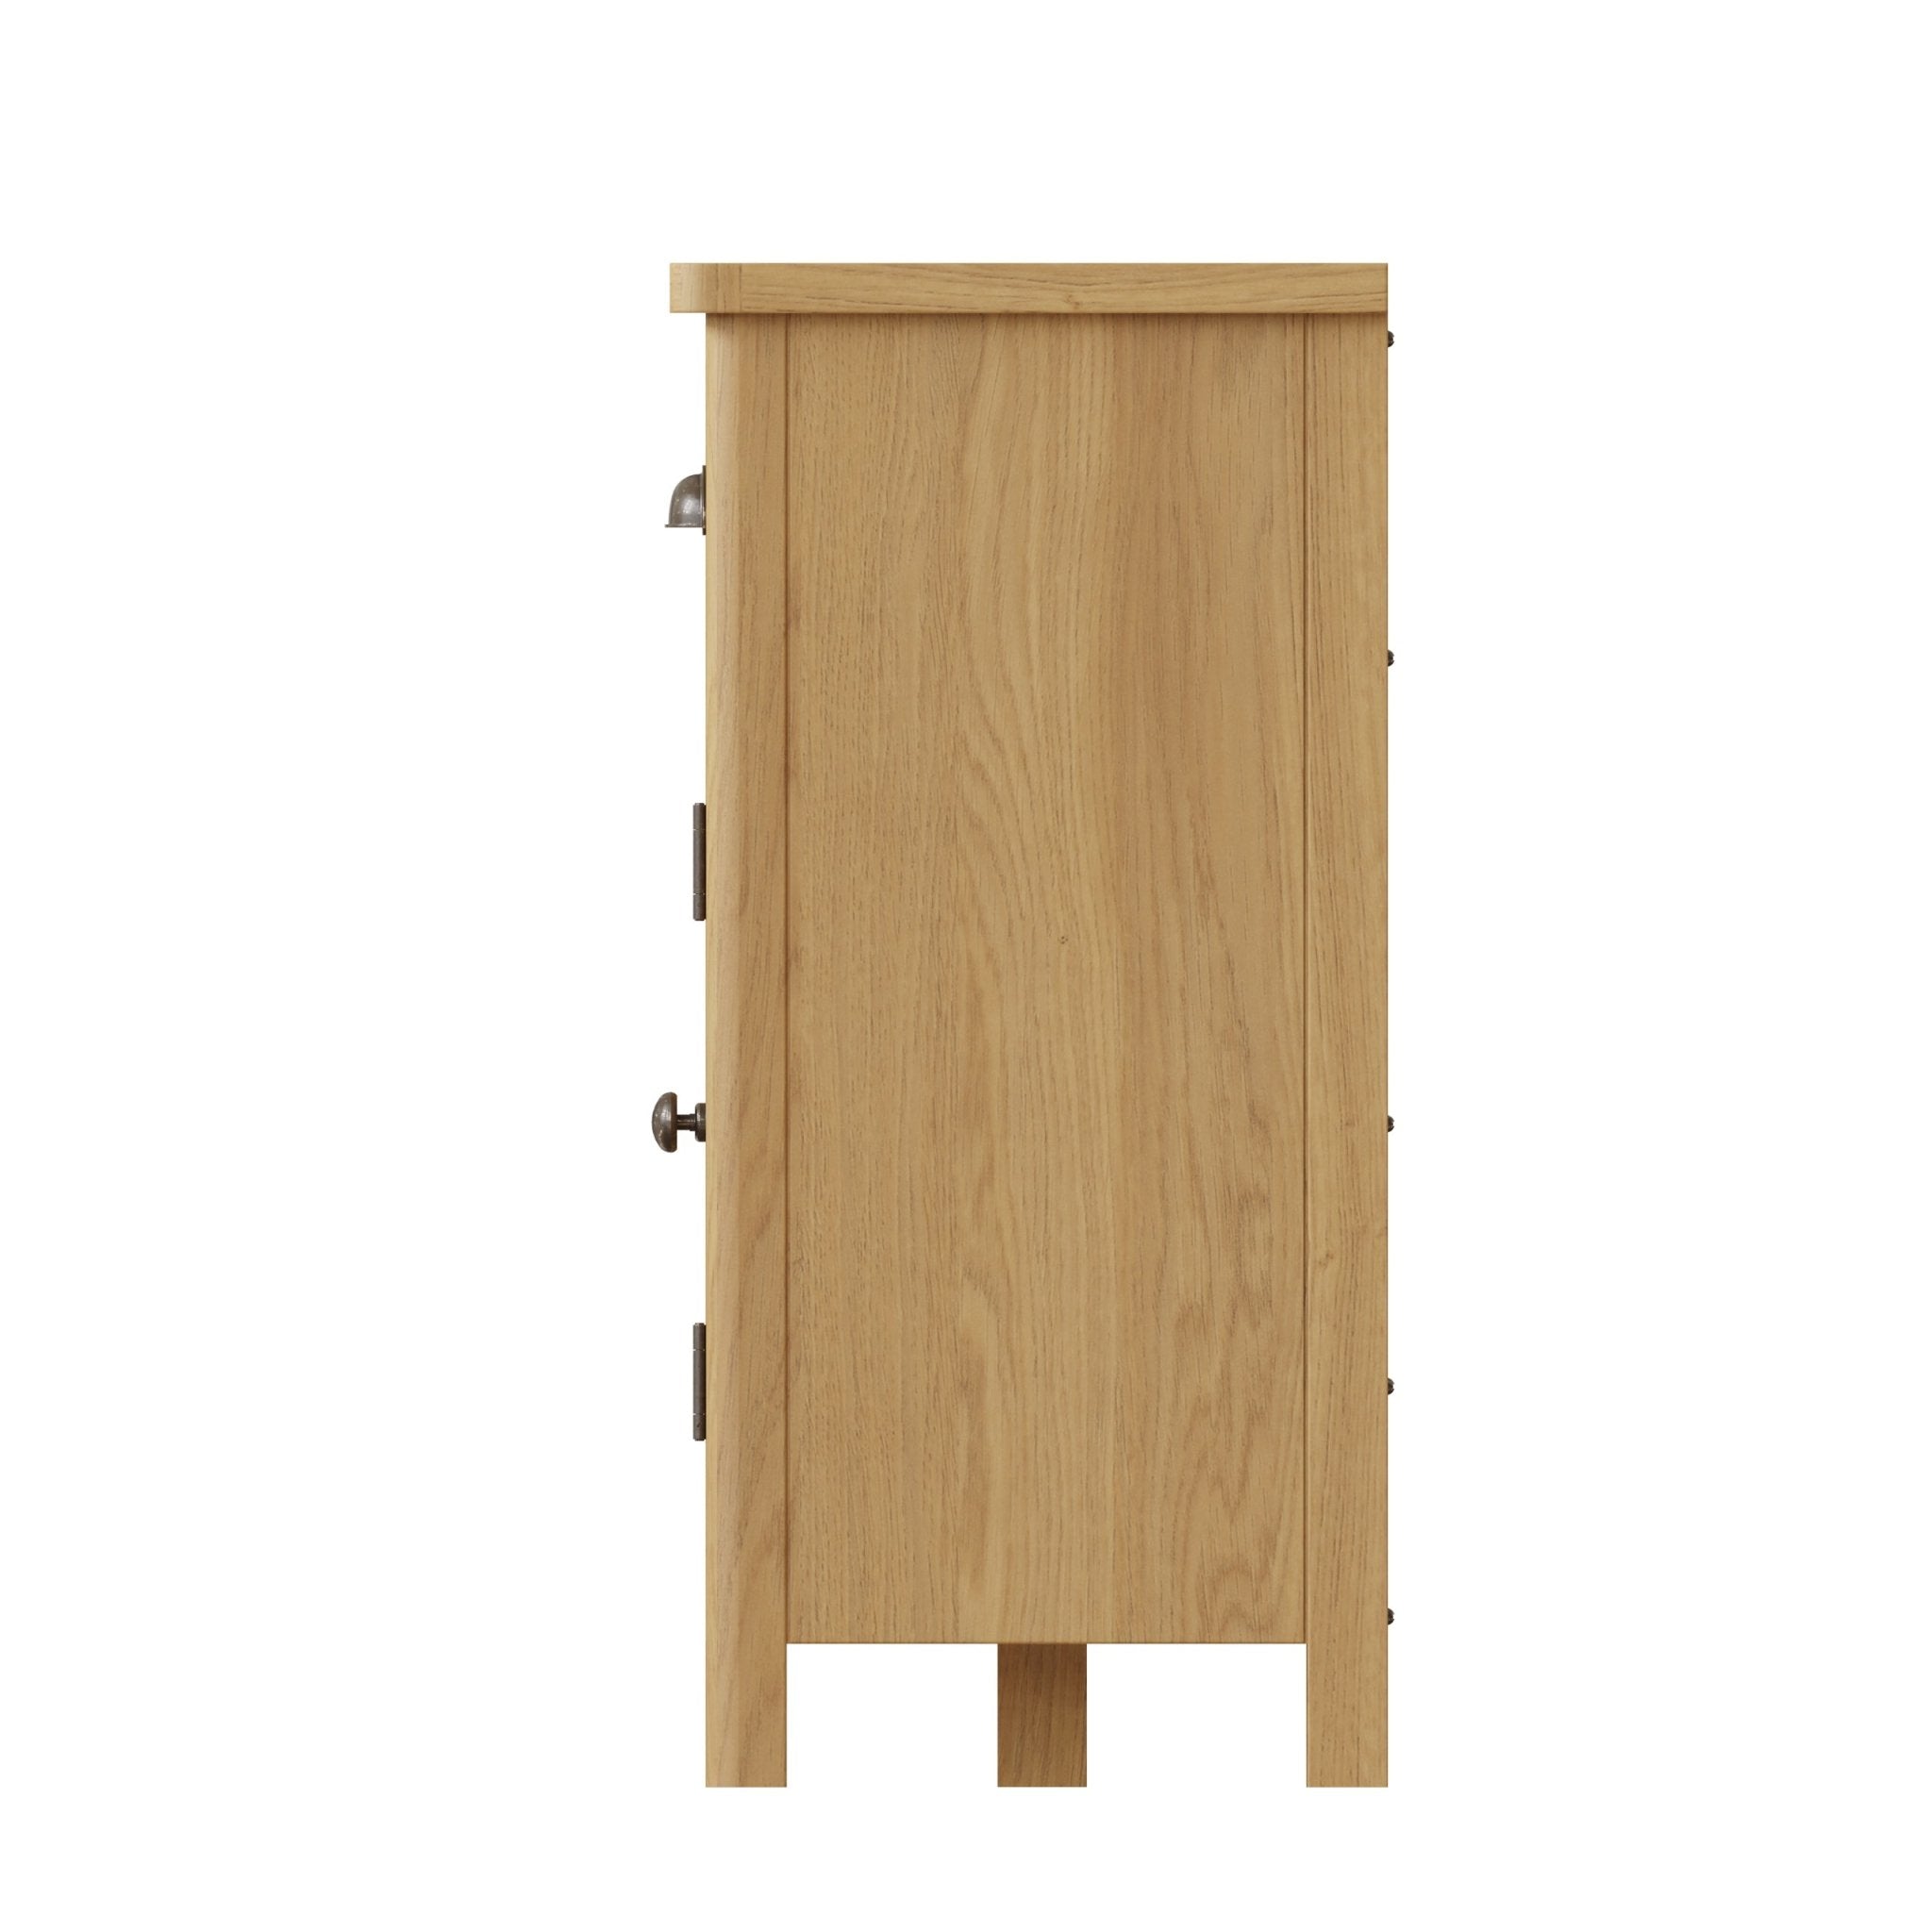 Loxwood Oak 3 Drawer 3 Door Sideboard - Duck Barn Interiors